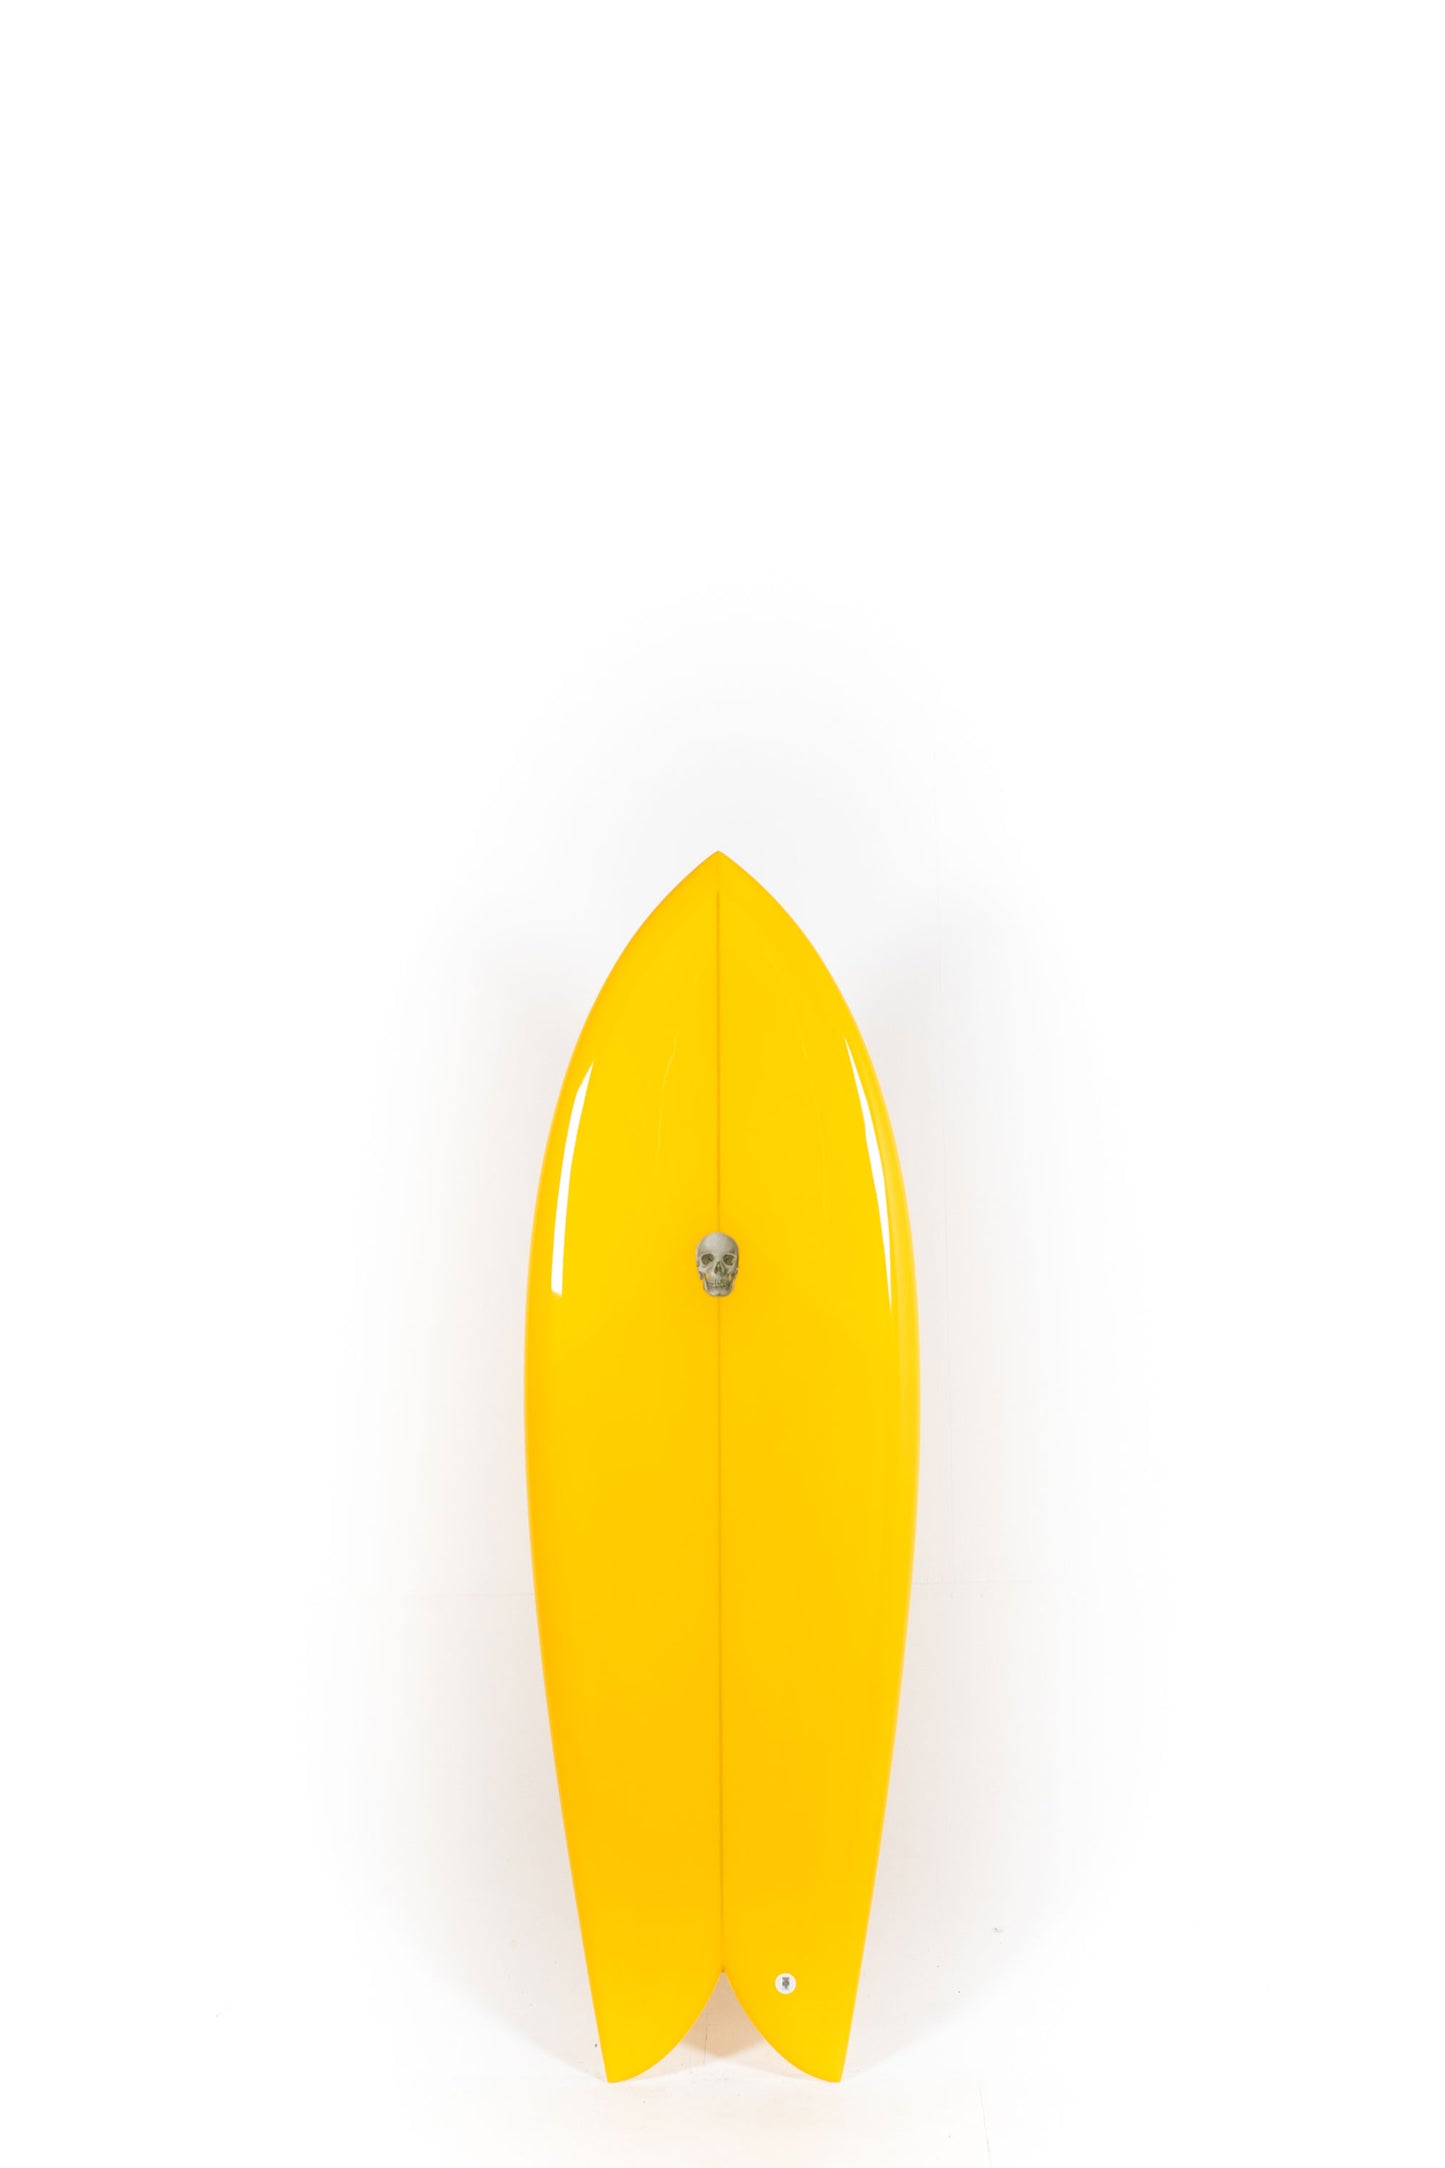 Pukas Surf Shop - Christenson Surfboards - CHRIS FISH - 5'4" x 20 3/4 x 2 3/8 -CX05032